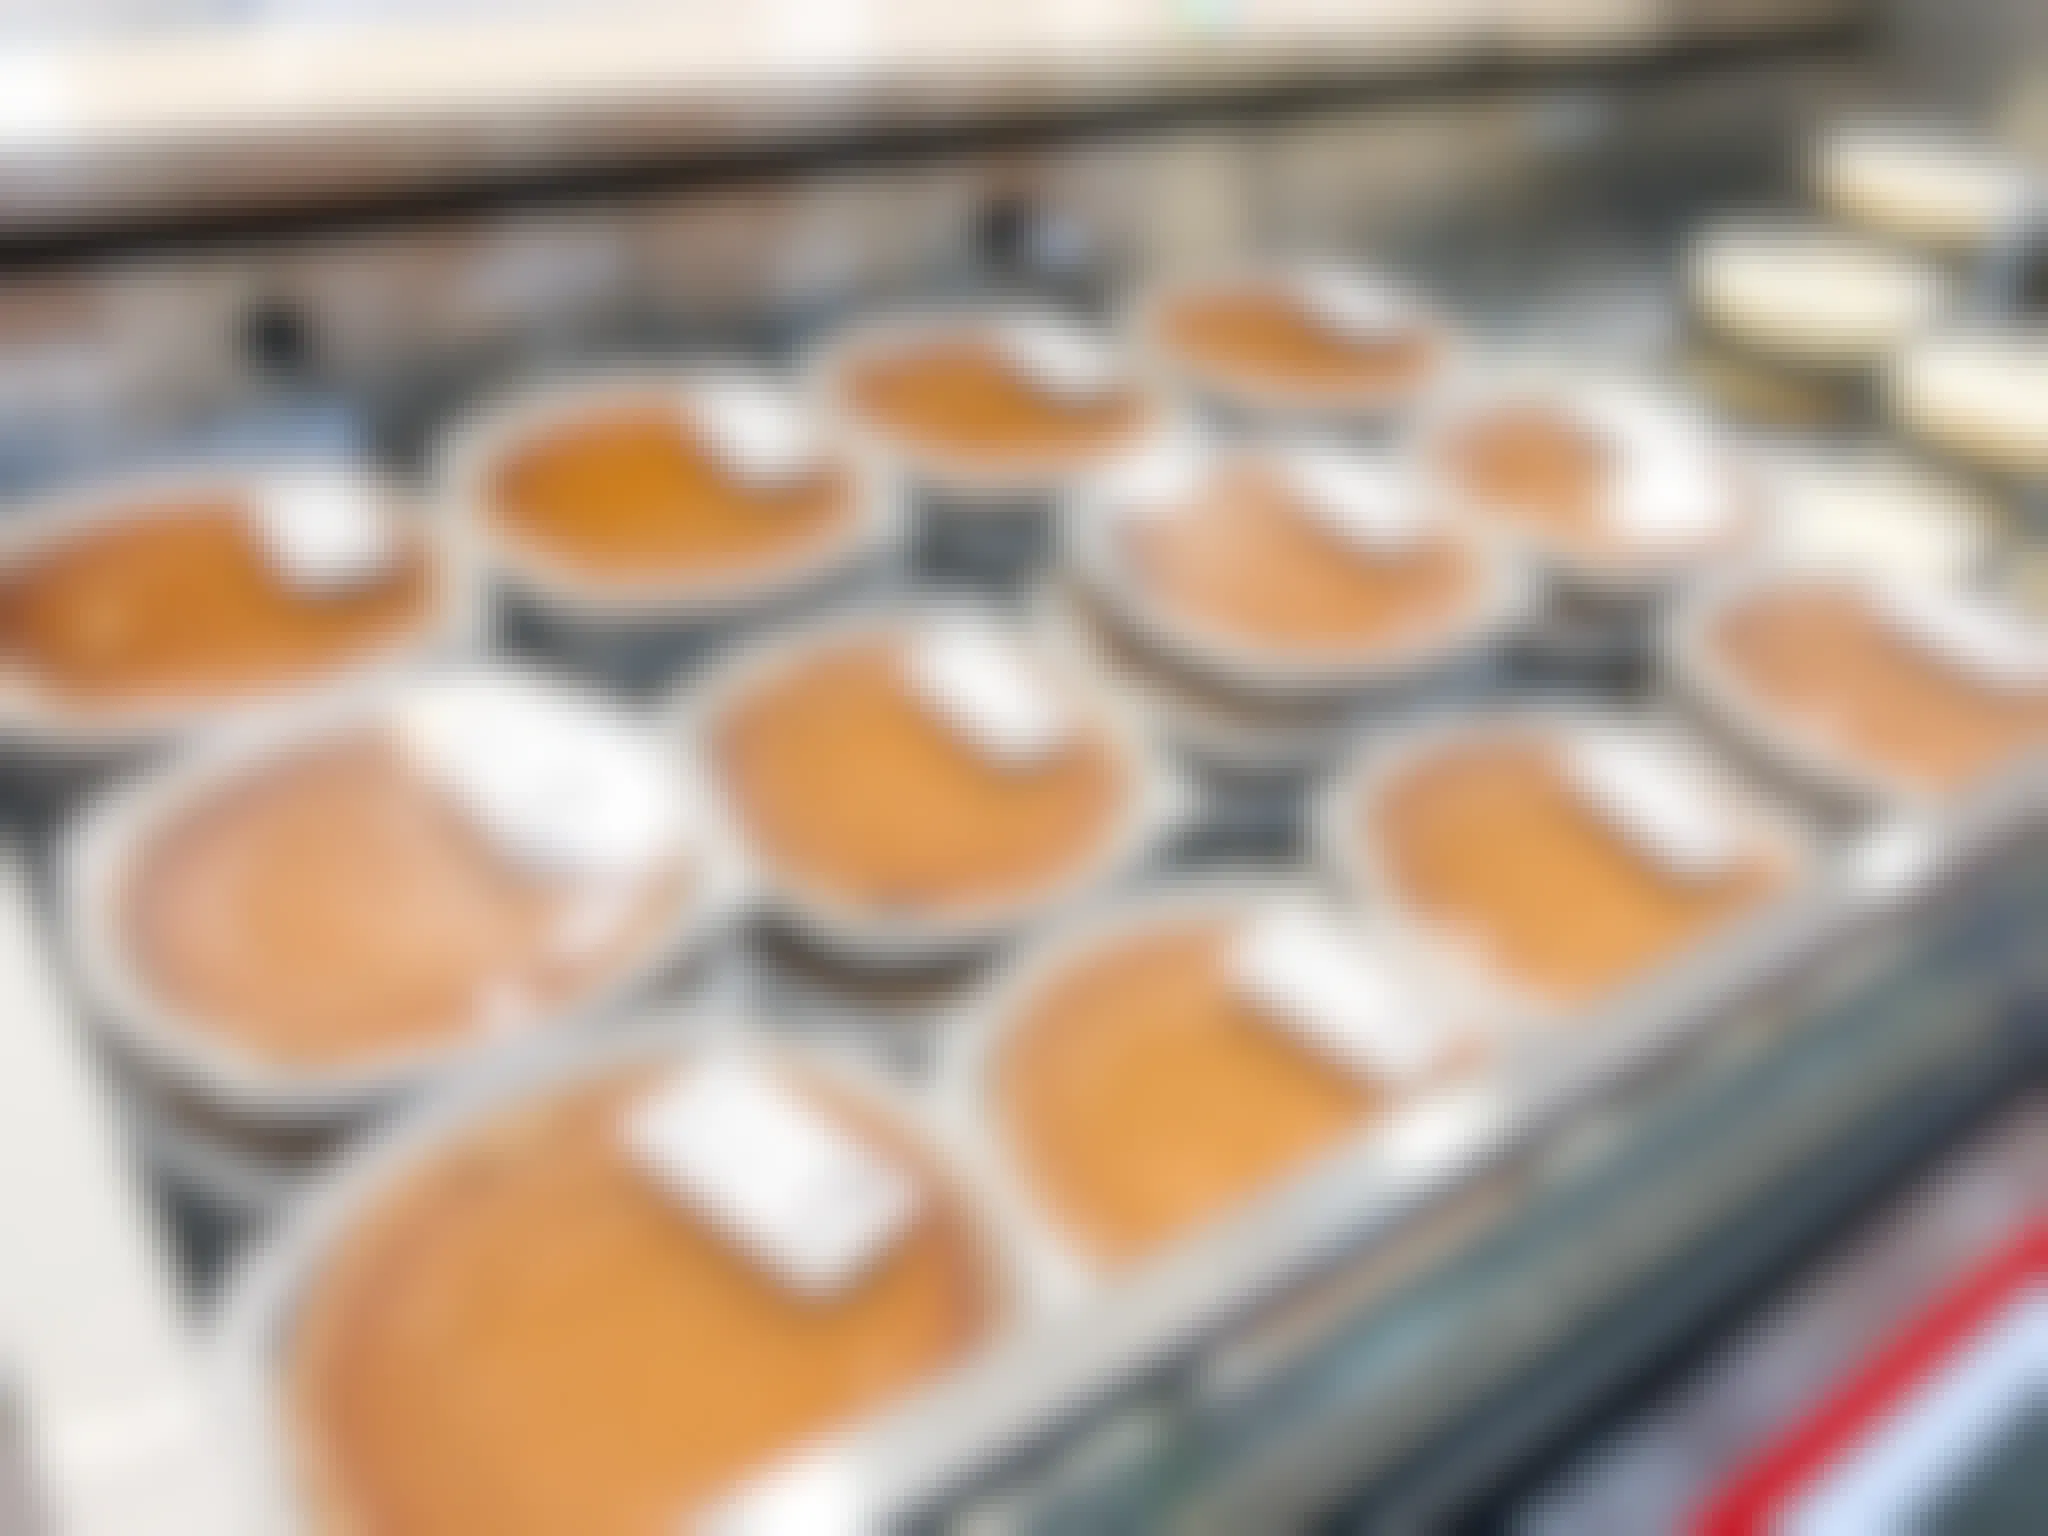 display of pumpkin pies in store cooler